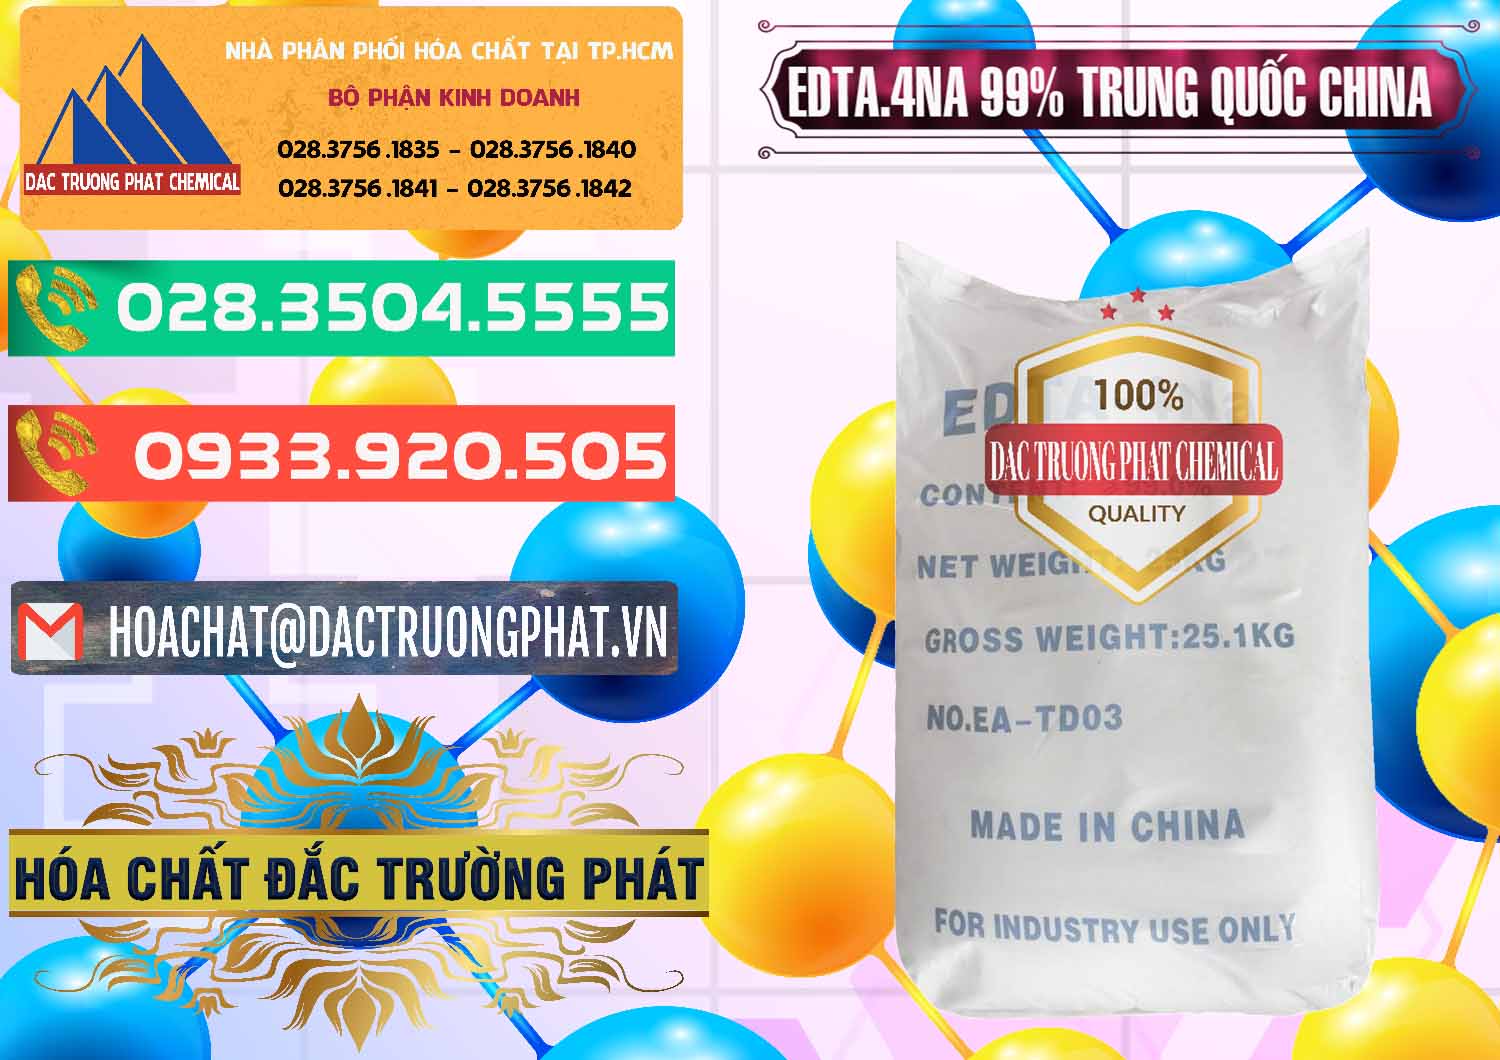 Cty chuyên bán - cung ứng EDTA.4NA - EDTA Muối 99% Trung Quốc China - 0292 - Công ty phân phối _ cung ứng hóa chất tại TP.HCM - congtyhoachat.com.vn